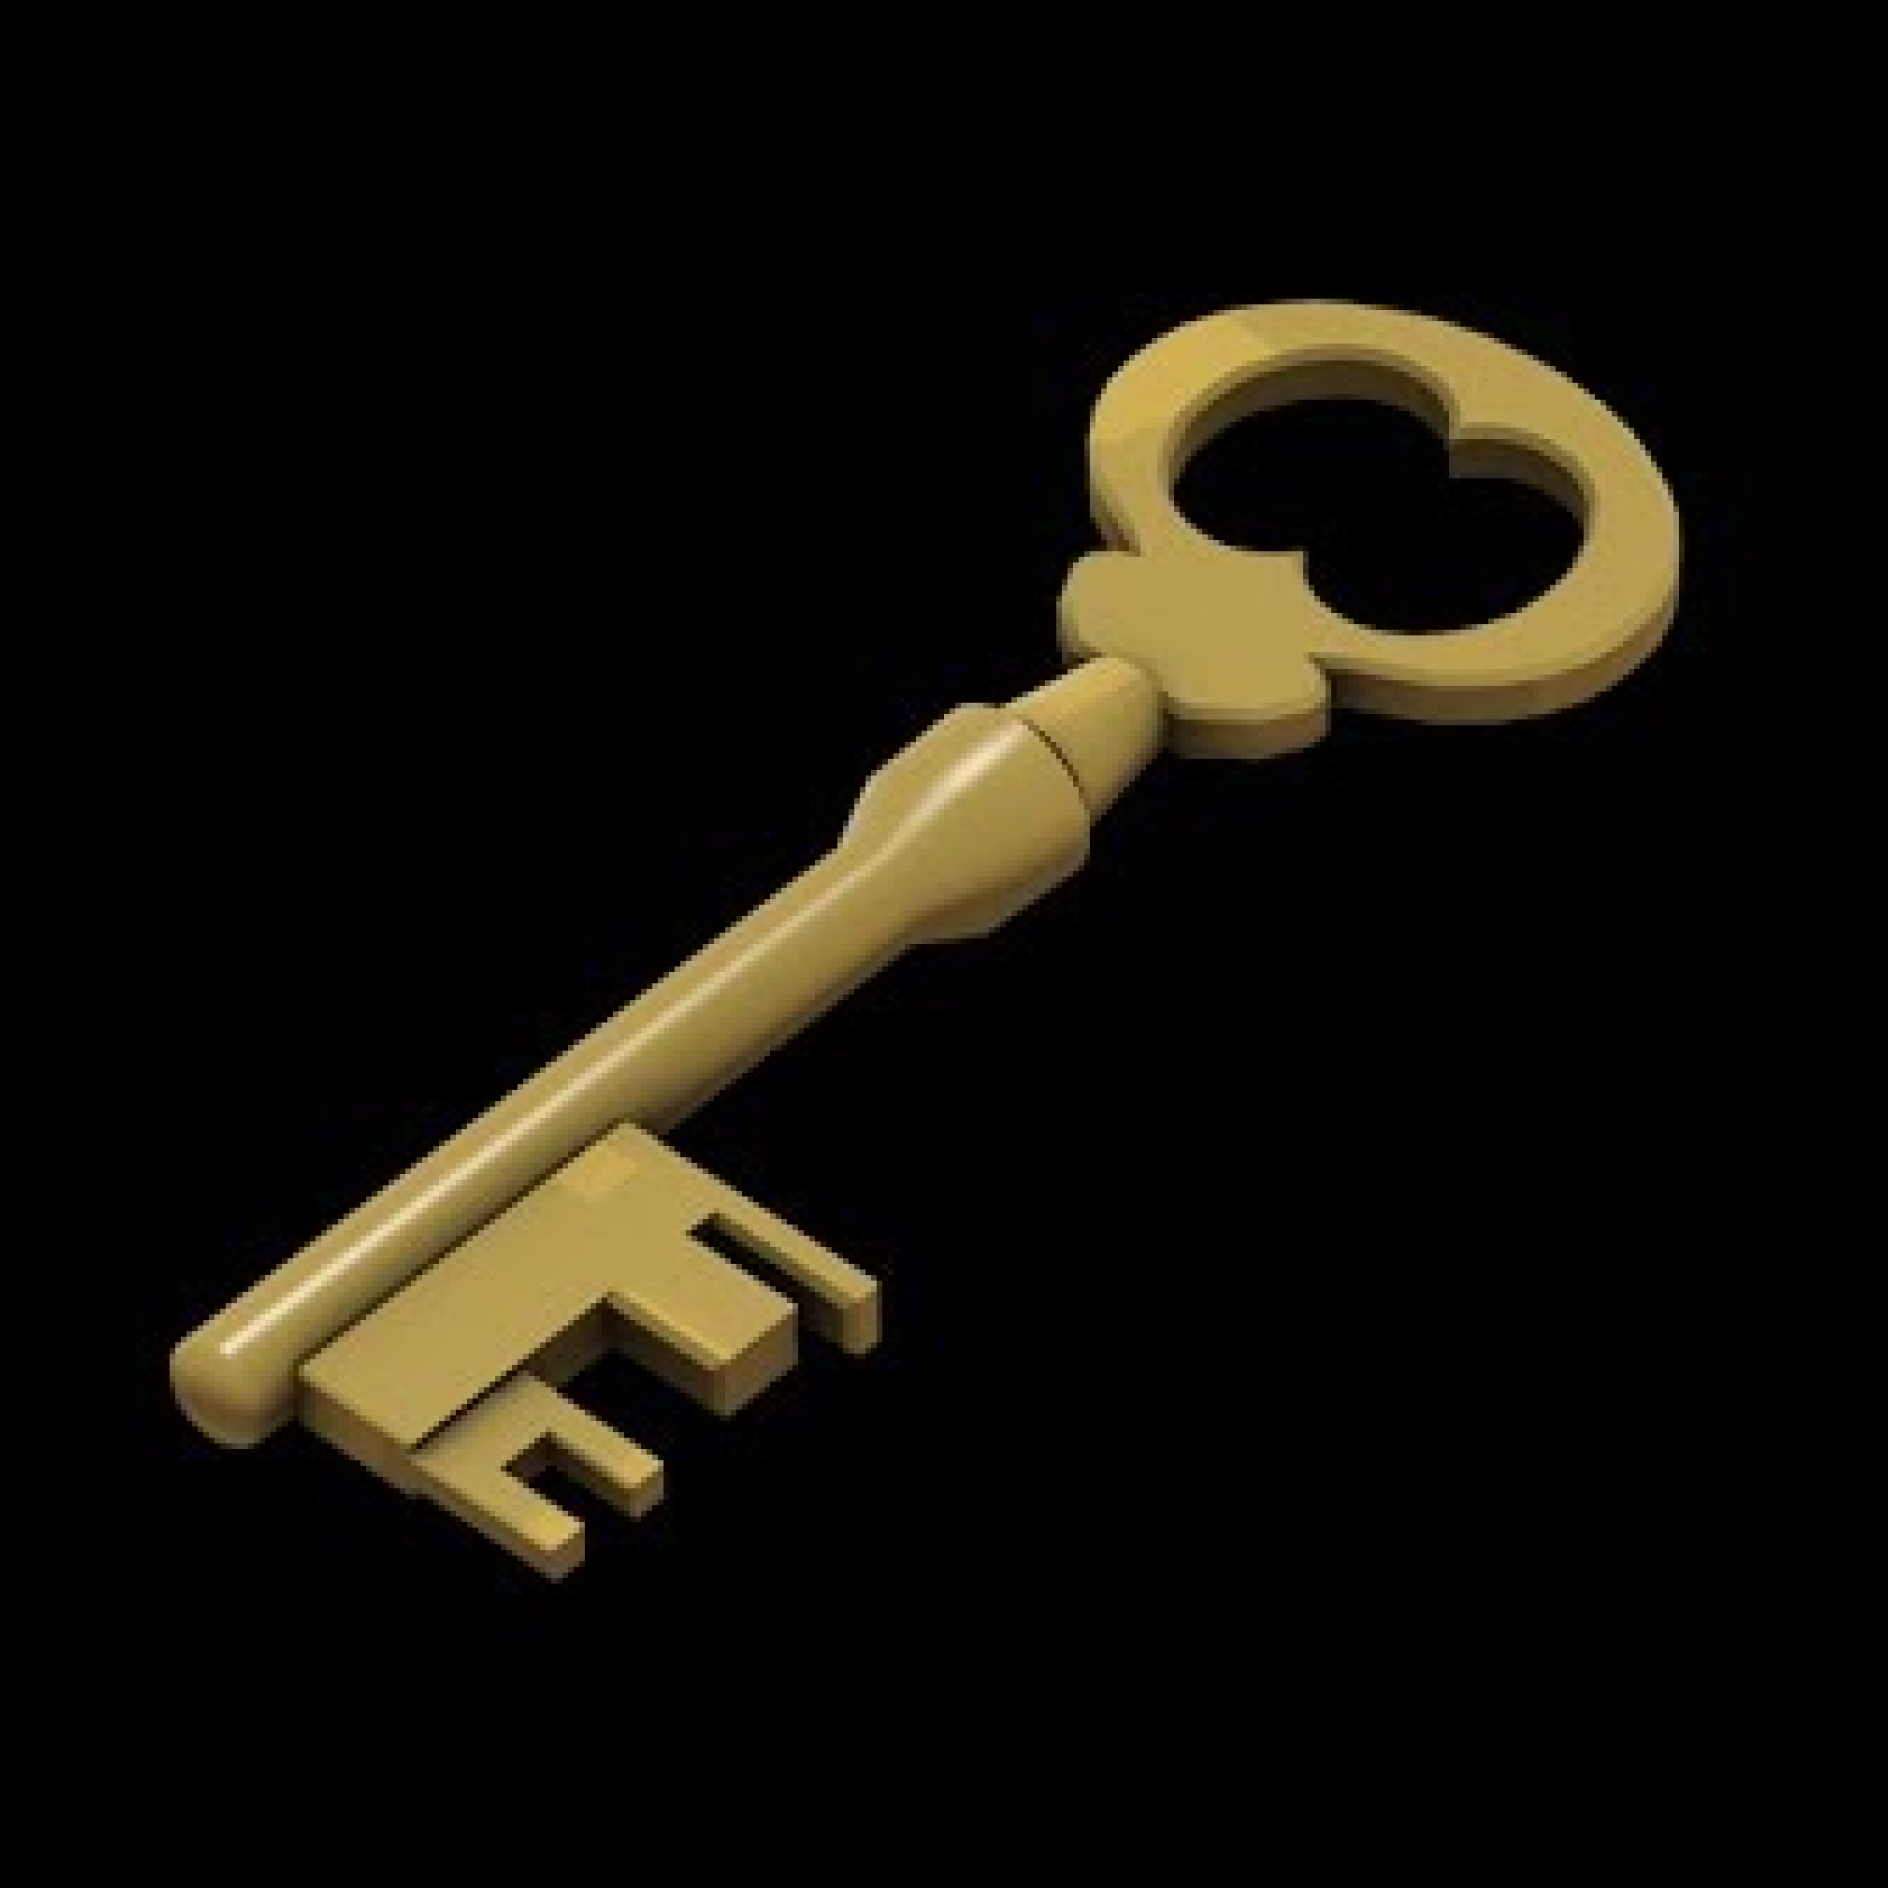 Key 2 game. Ключ тф2. Ключ из Team Fortress 2. Ключ от ящика Манн ко. Ключ тим фортресс.